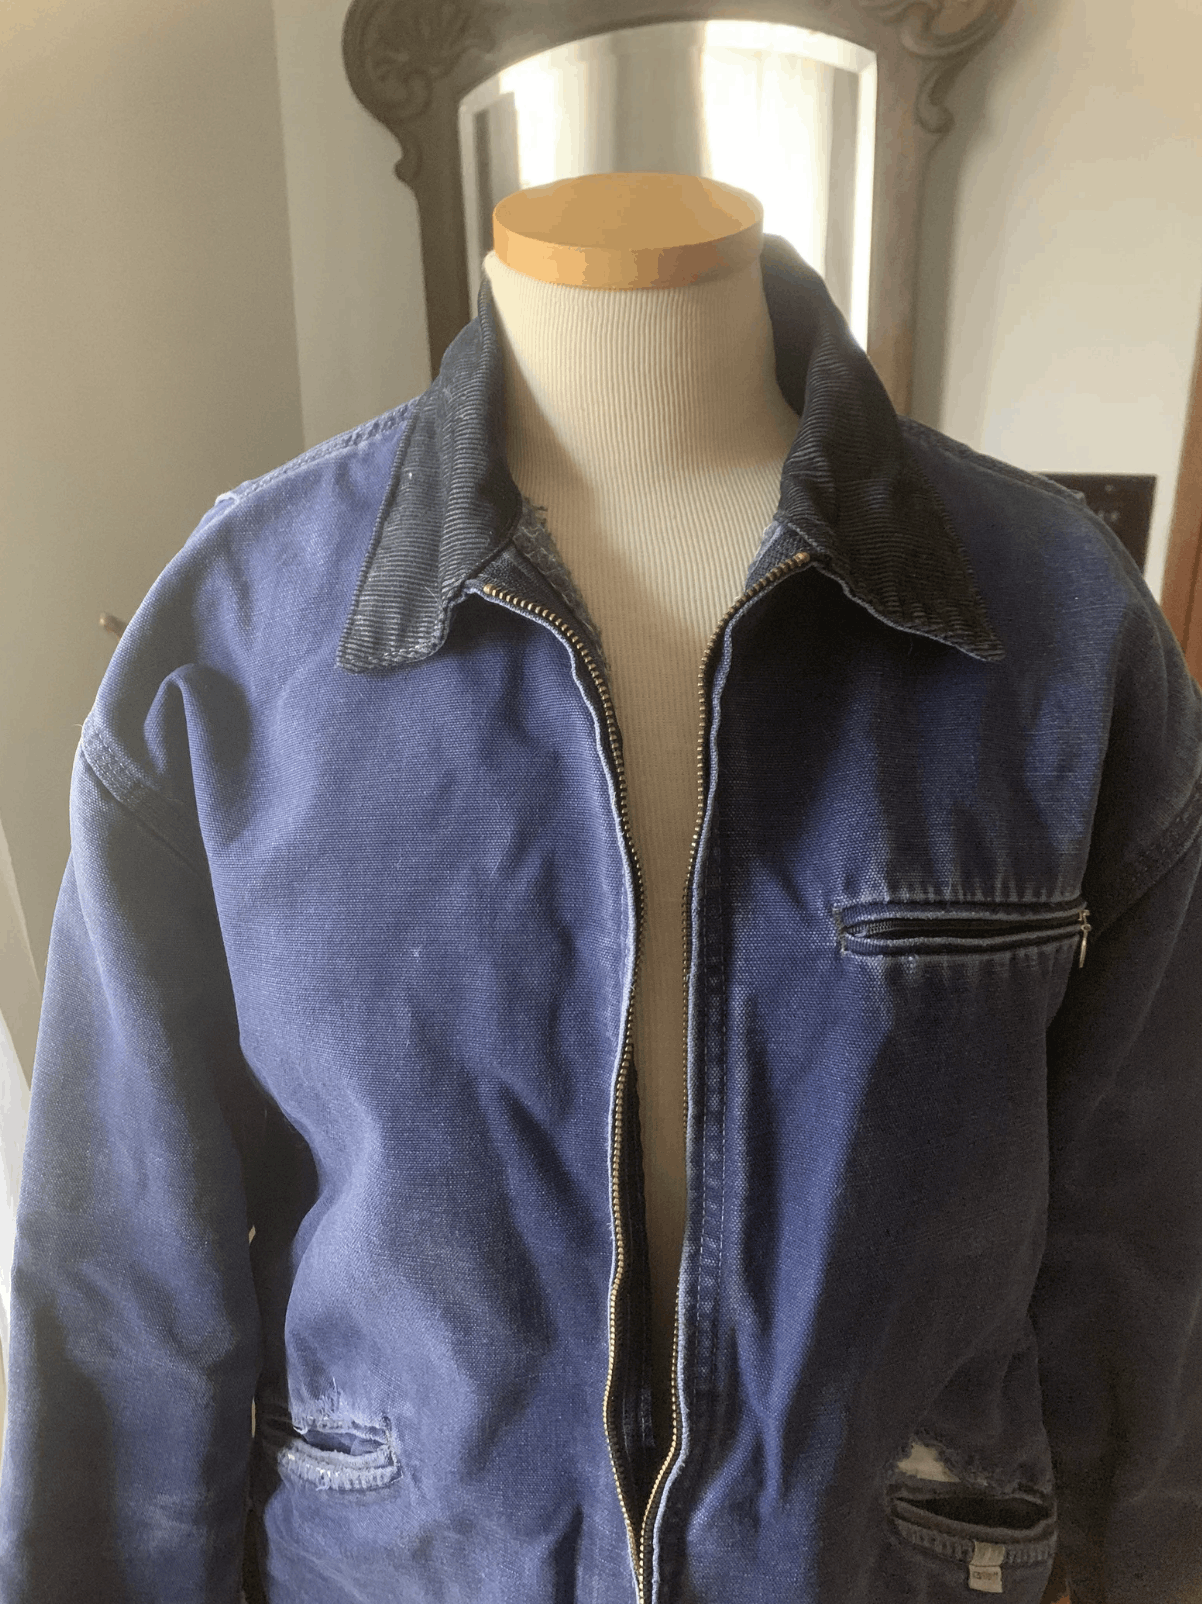 Carhartt Vintage Carhartt Detroit Jacket Faded Blue Size US M / EU 48-50 / 2 - 6 Thumbnail